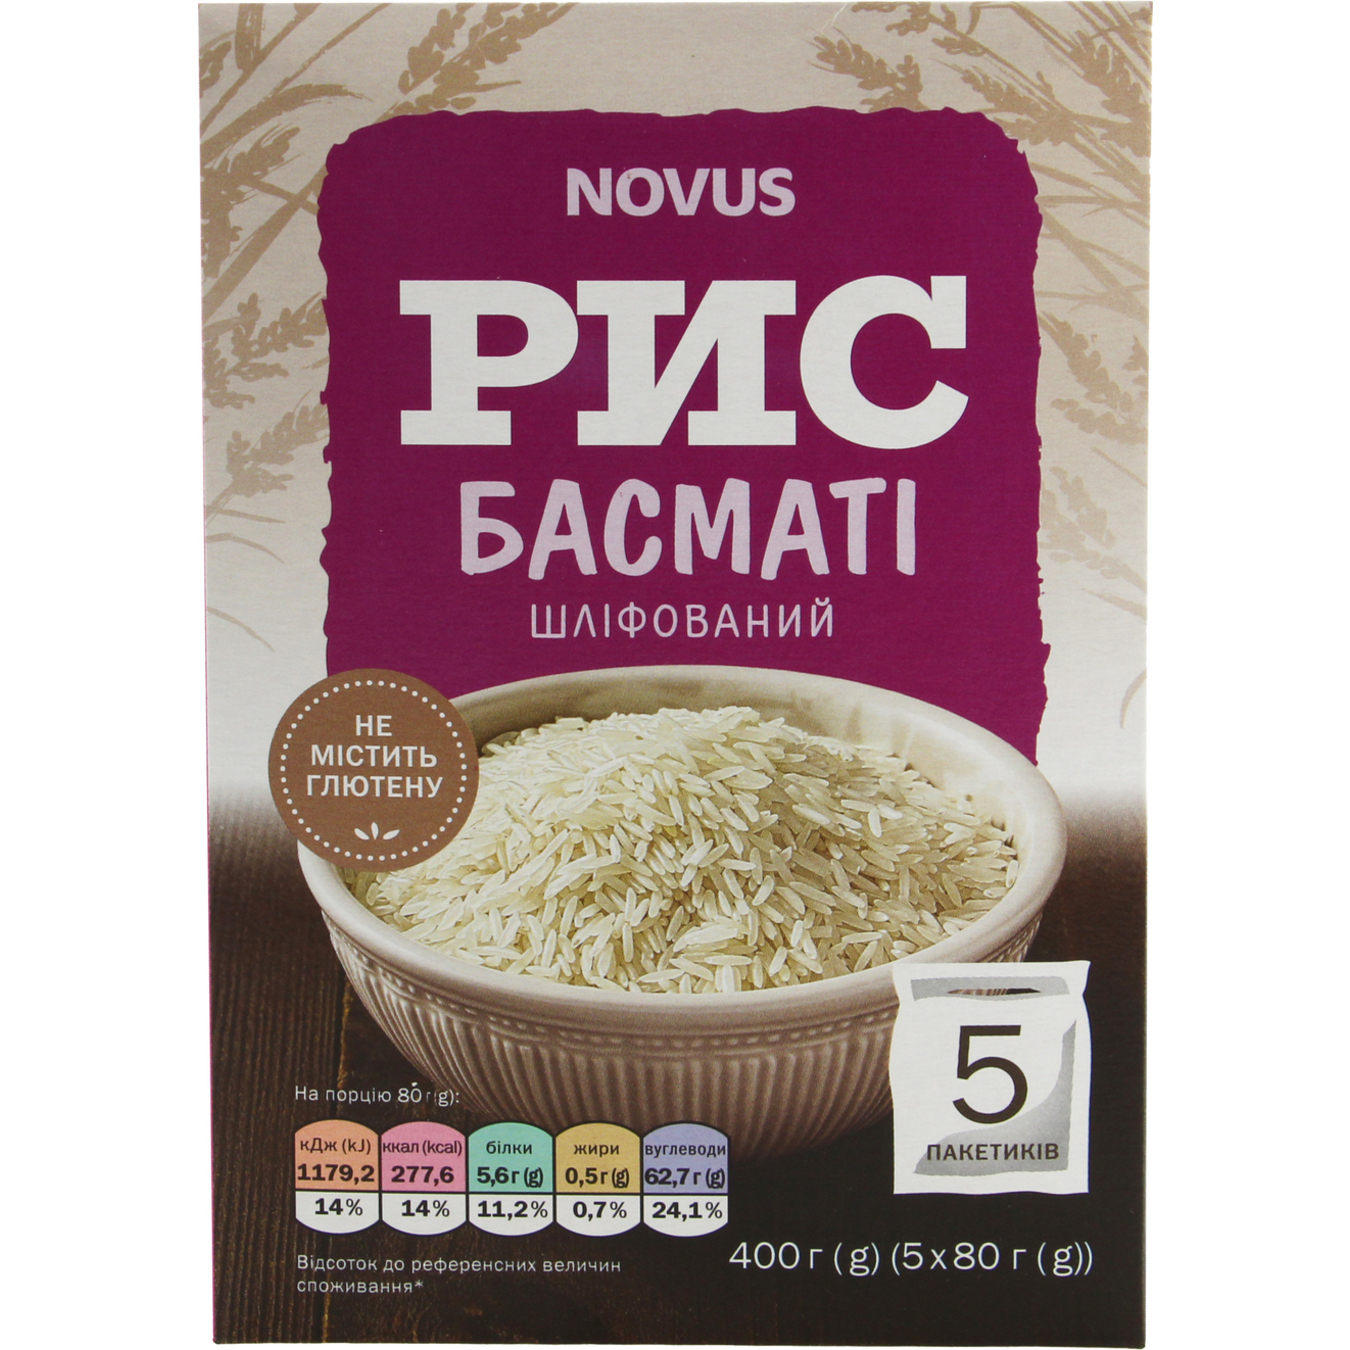 Novus Basmati Polished Rice 5x80g